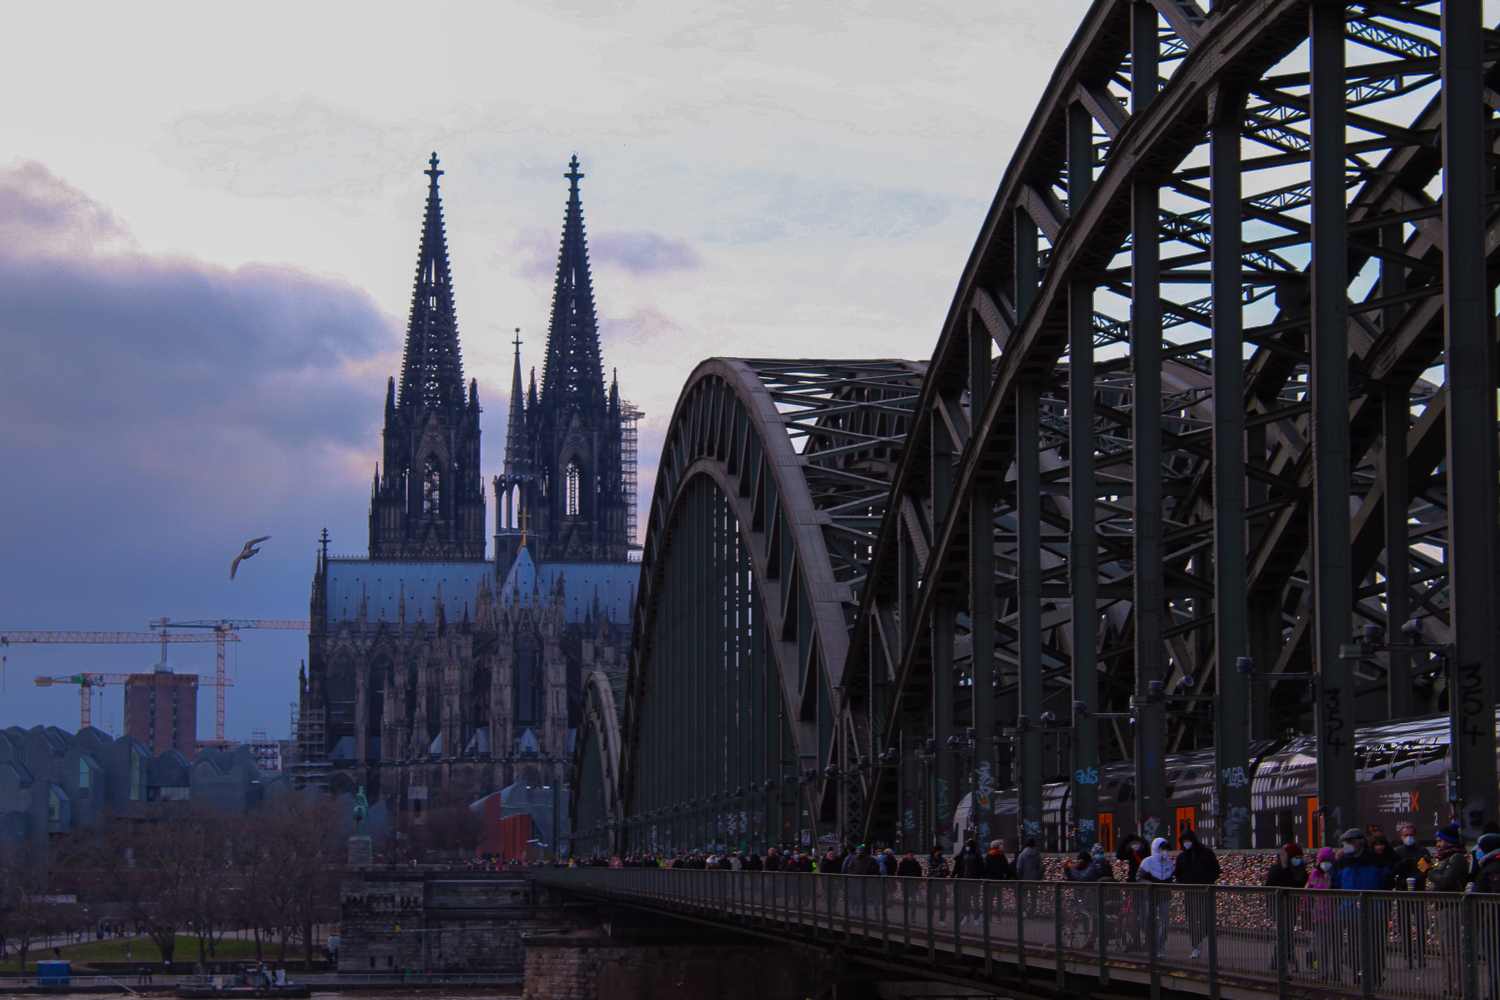 #Wochenvorschau: Handball-EM, Erweiterung der Hohenzollernbrücke und Karnevalsmarkt